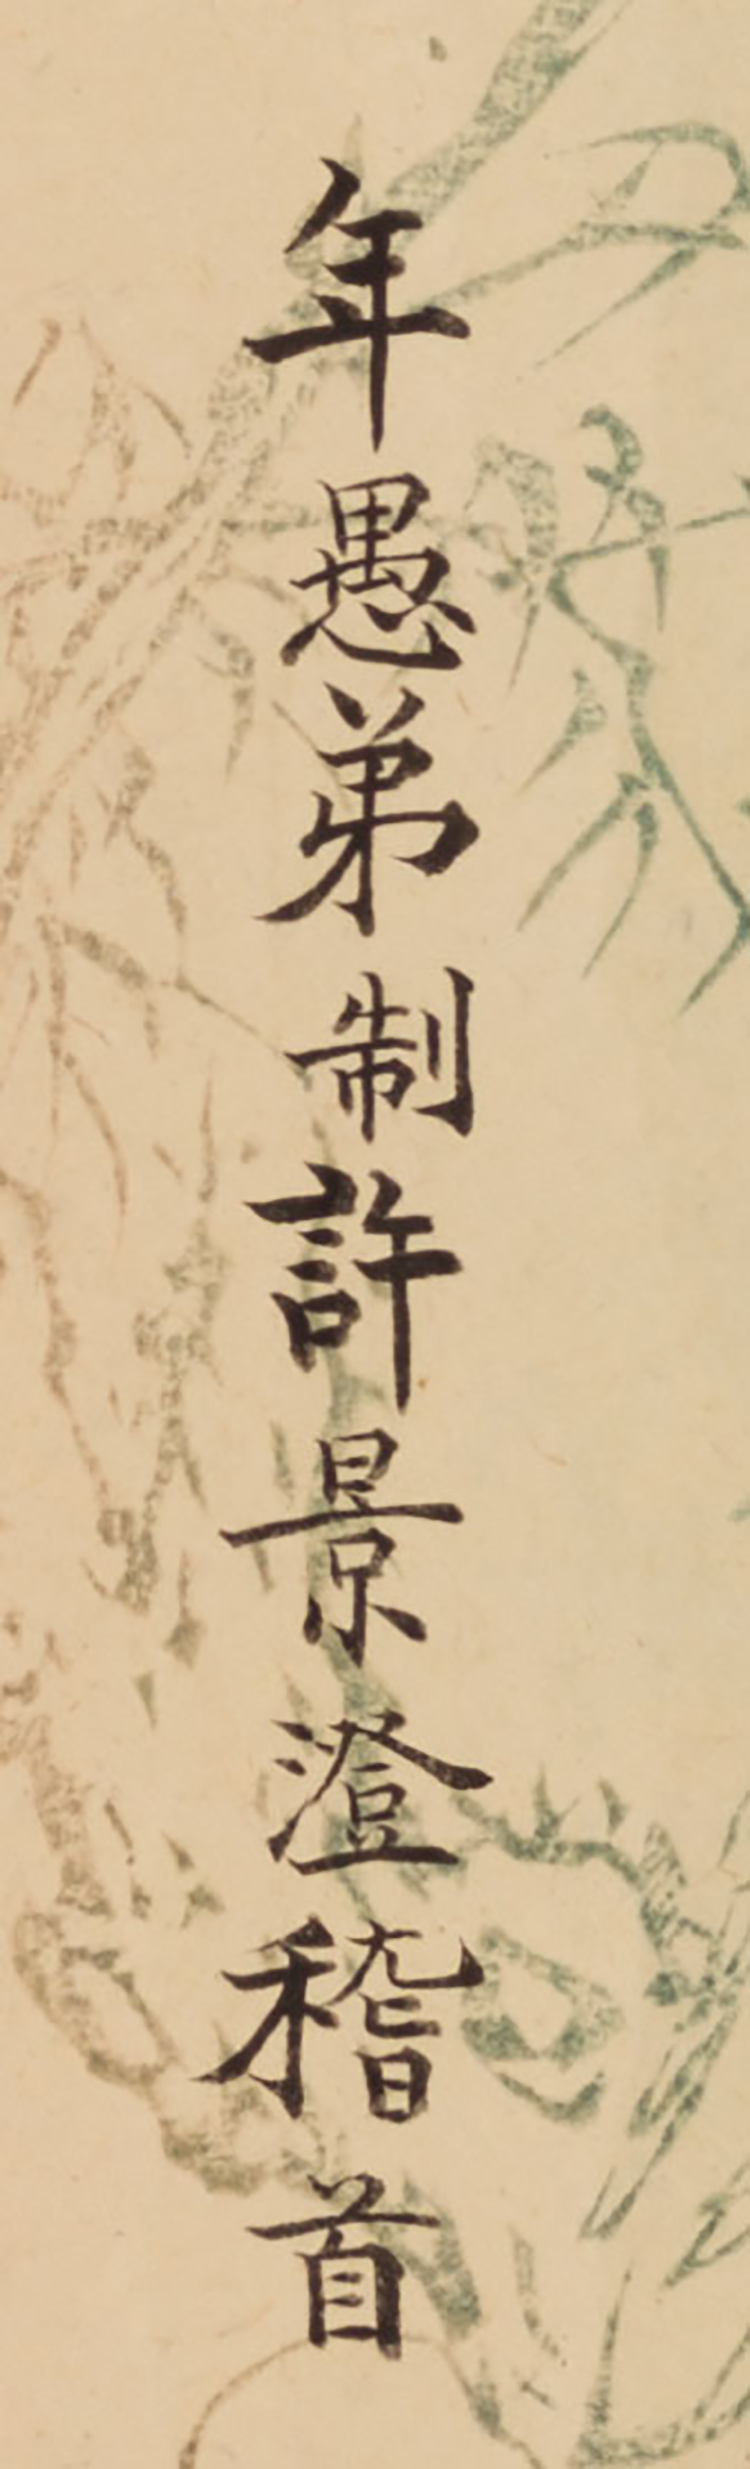 Seal Script Calligraphy by Yang Jun